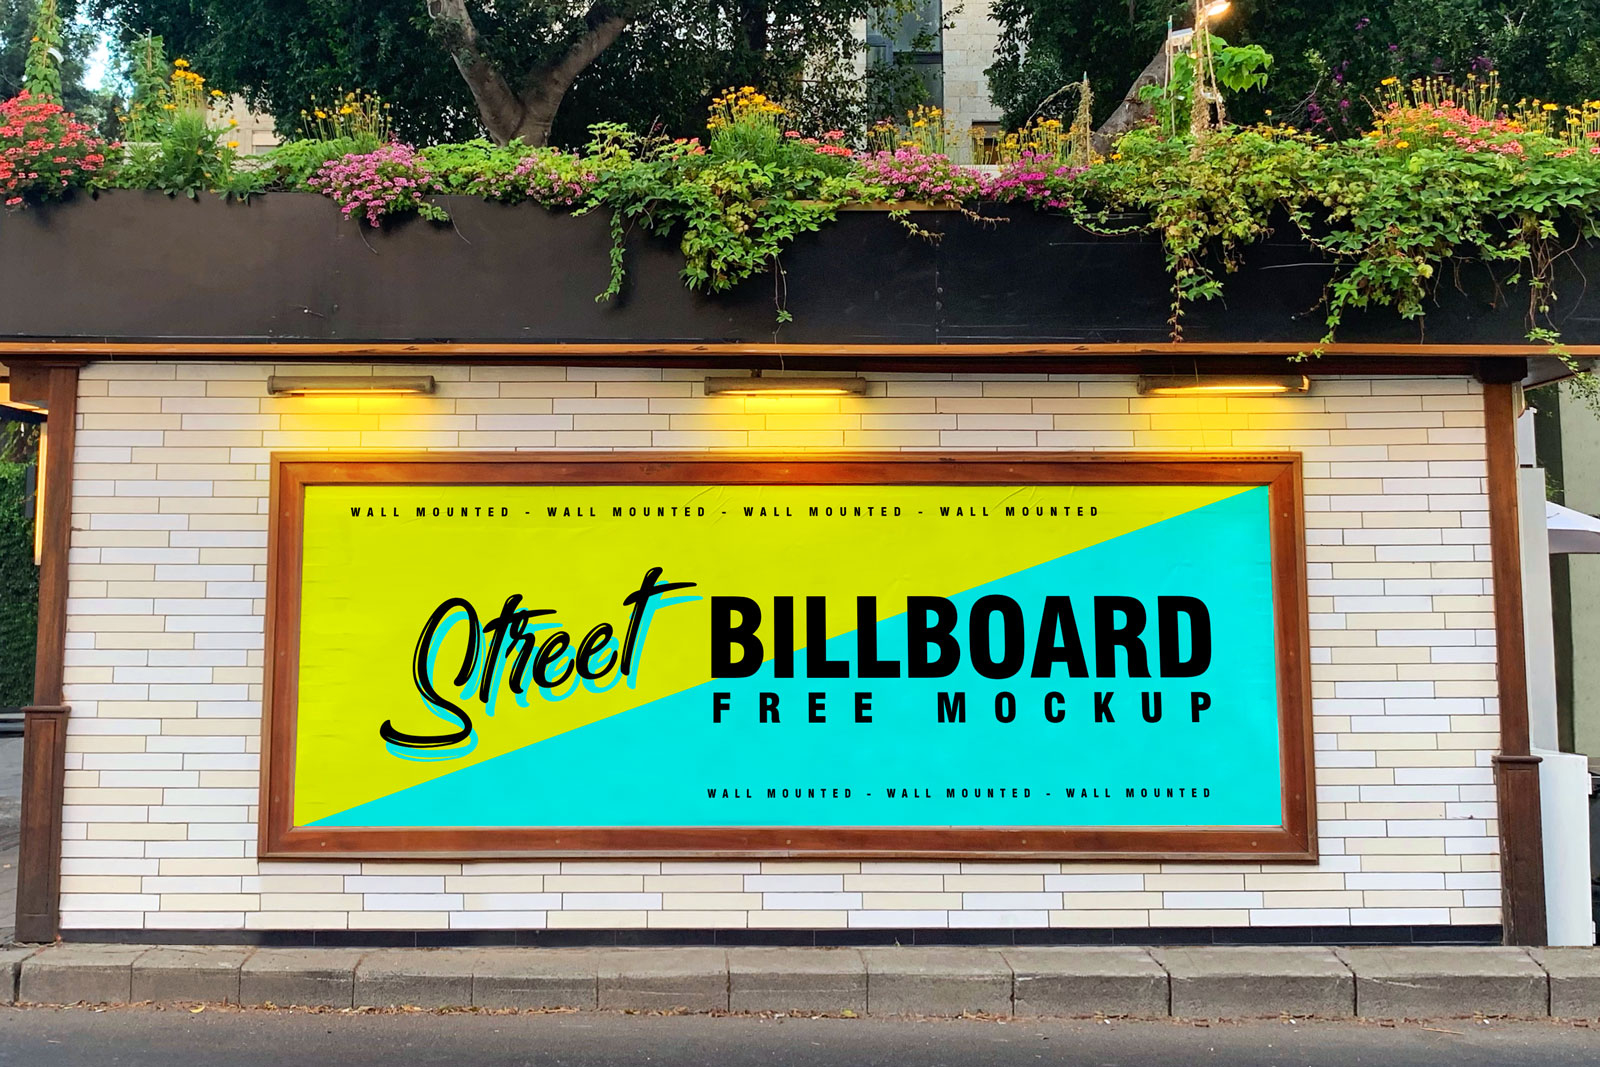 Street Wall Mounted Billboard Mockup